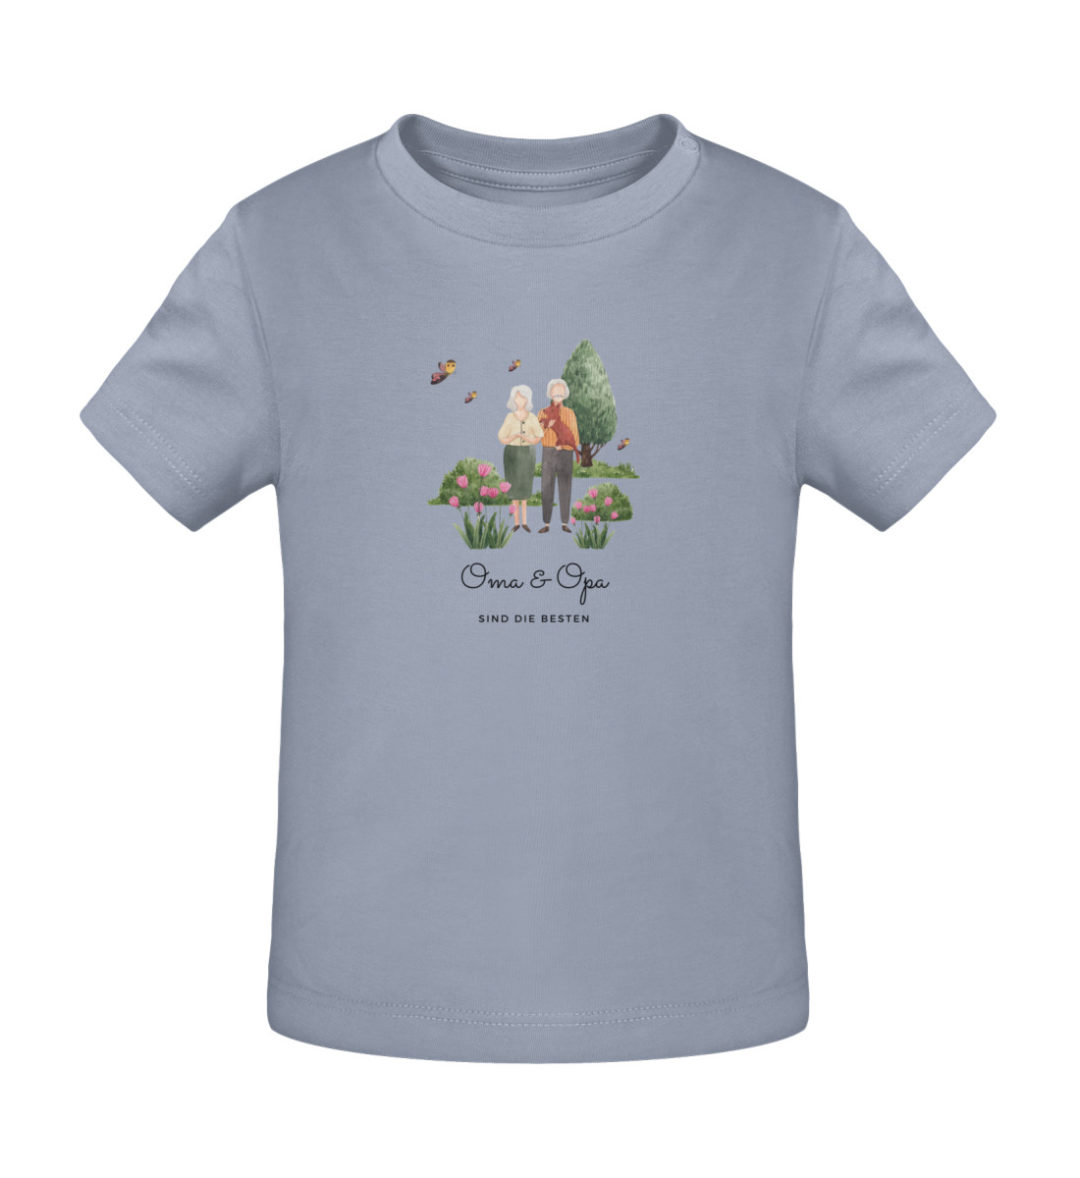 Oma & Opa sind die besten - Baby Creator T-Shirt ST/ST-7086